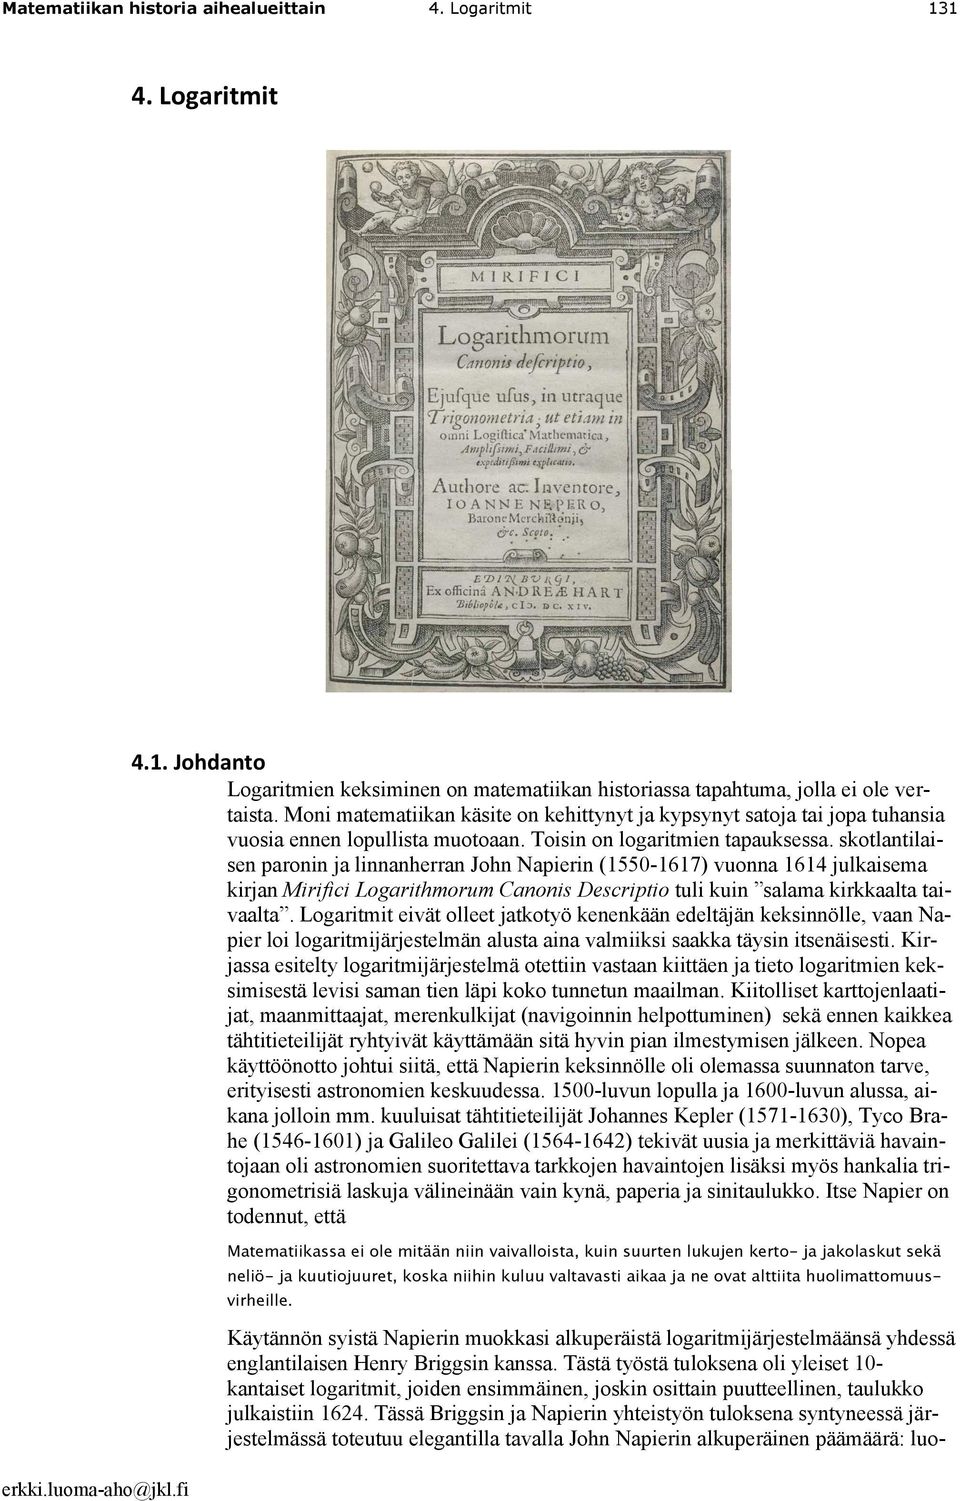 skotlantilaisen paronin ja linnanherran John Napierin (1550-1617) vuonna 1614 julkaisema kirjan Mirifici Logarithmorum Canonis Descriptio tuli kuin salama kirkkaalta taivaalta.